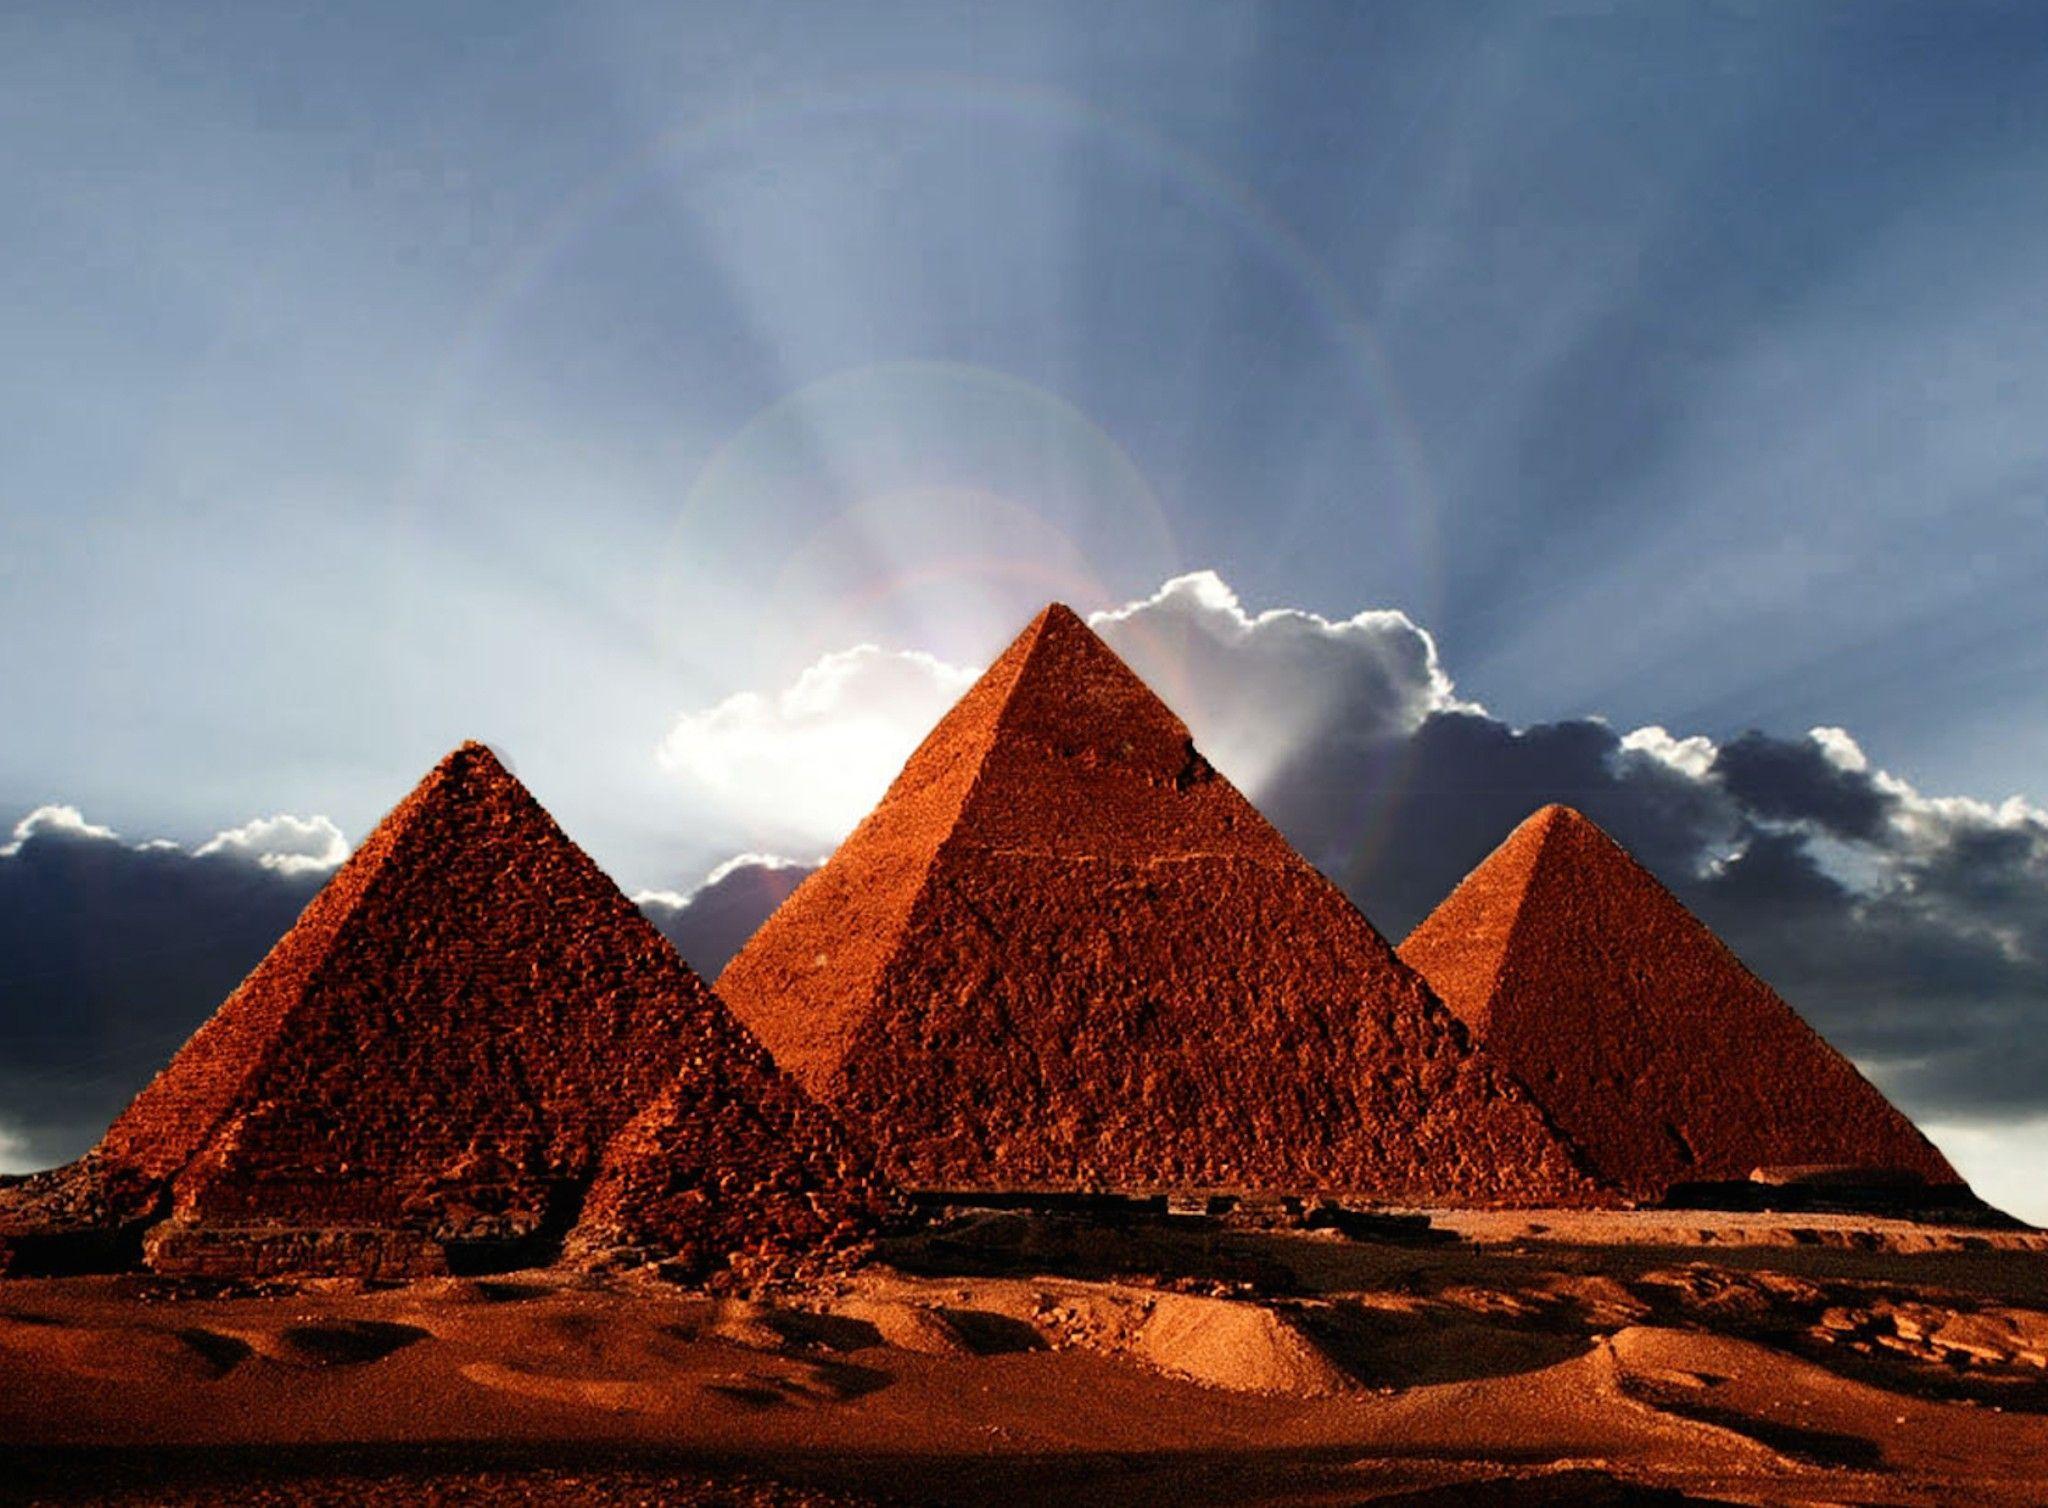 Egypt #Pyramids #Digital #Art 3D #Wallpaper #creative #design